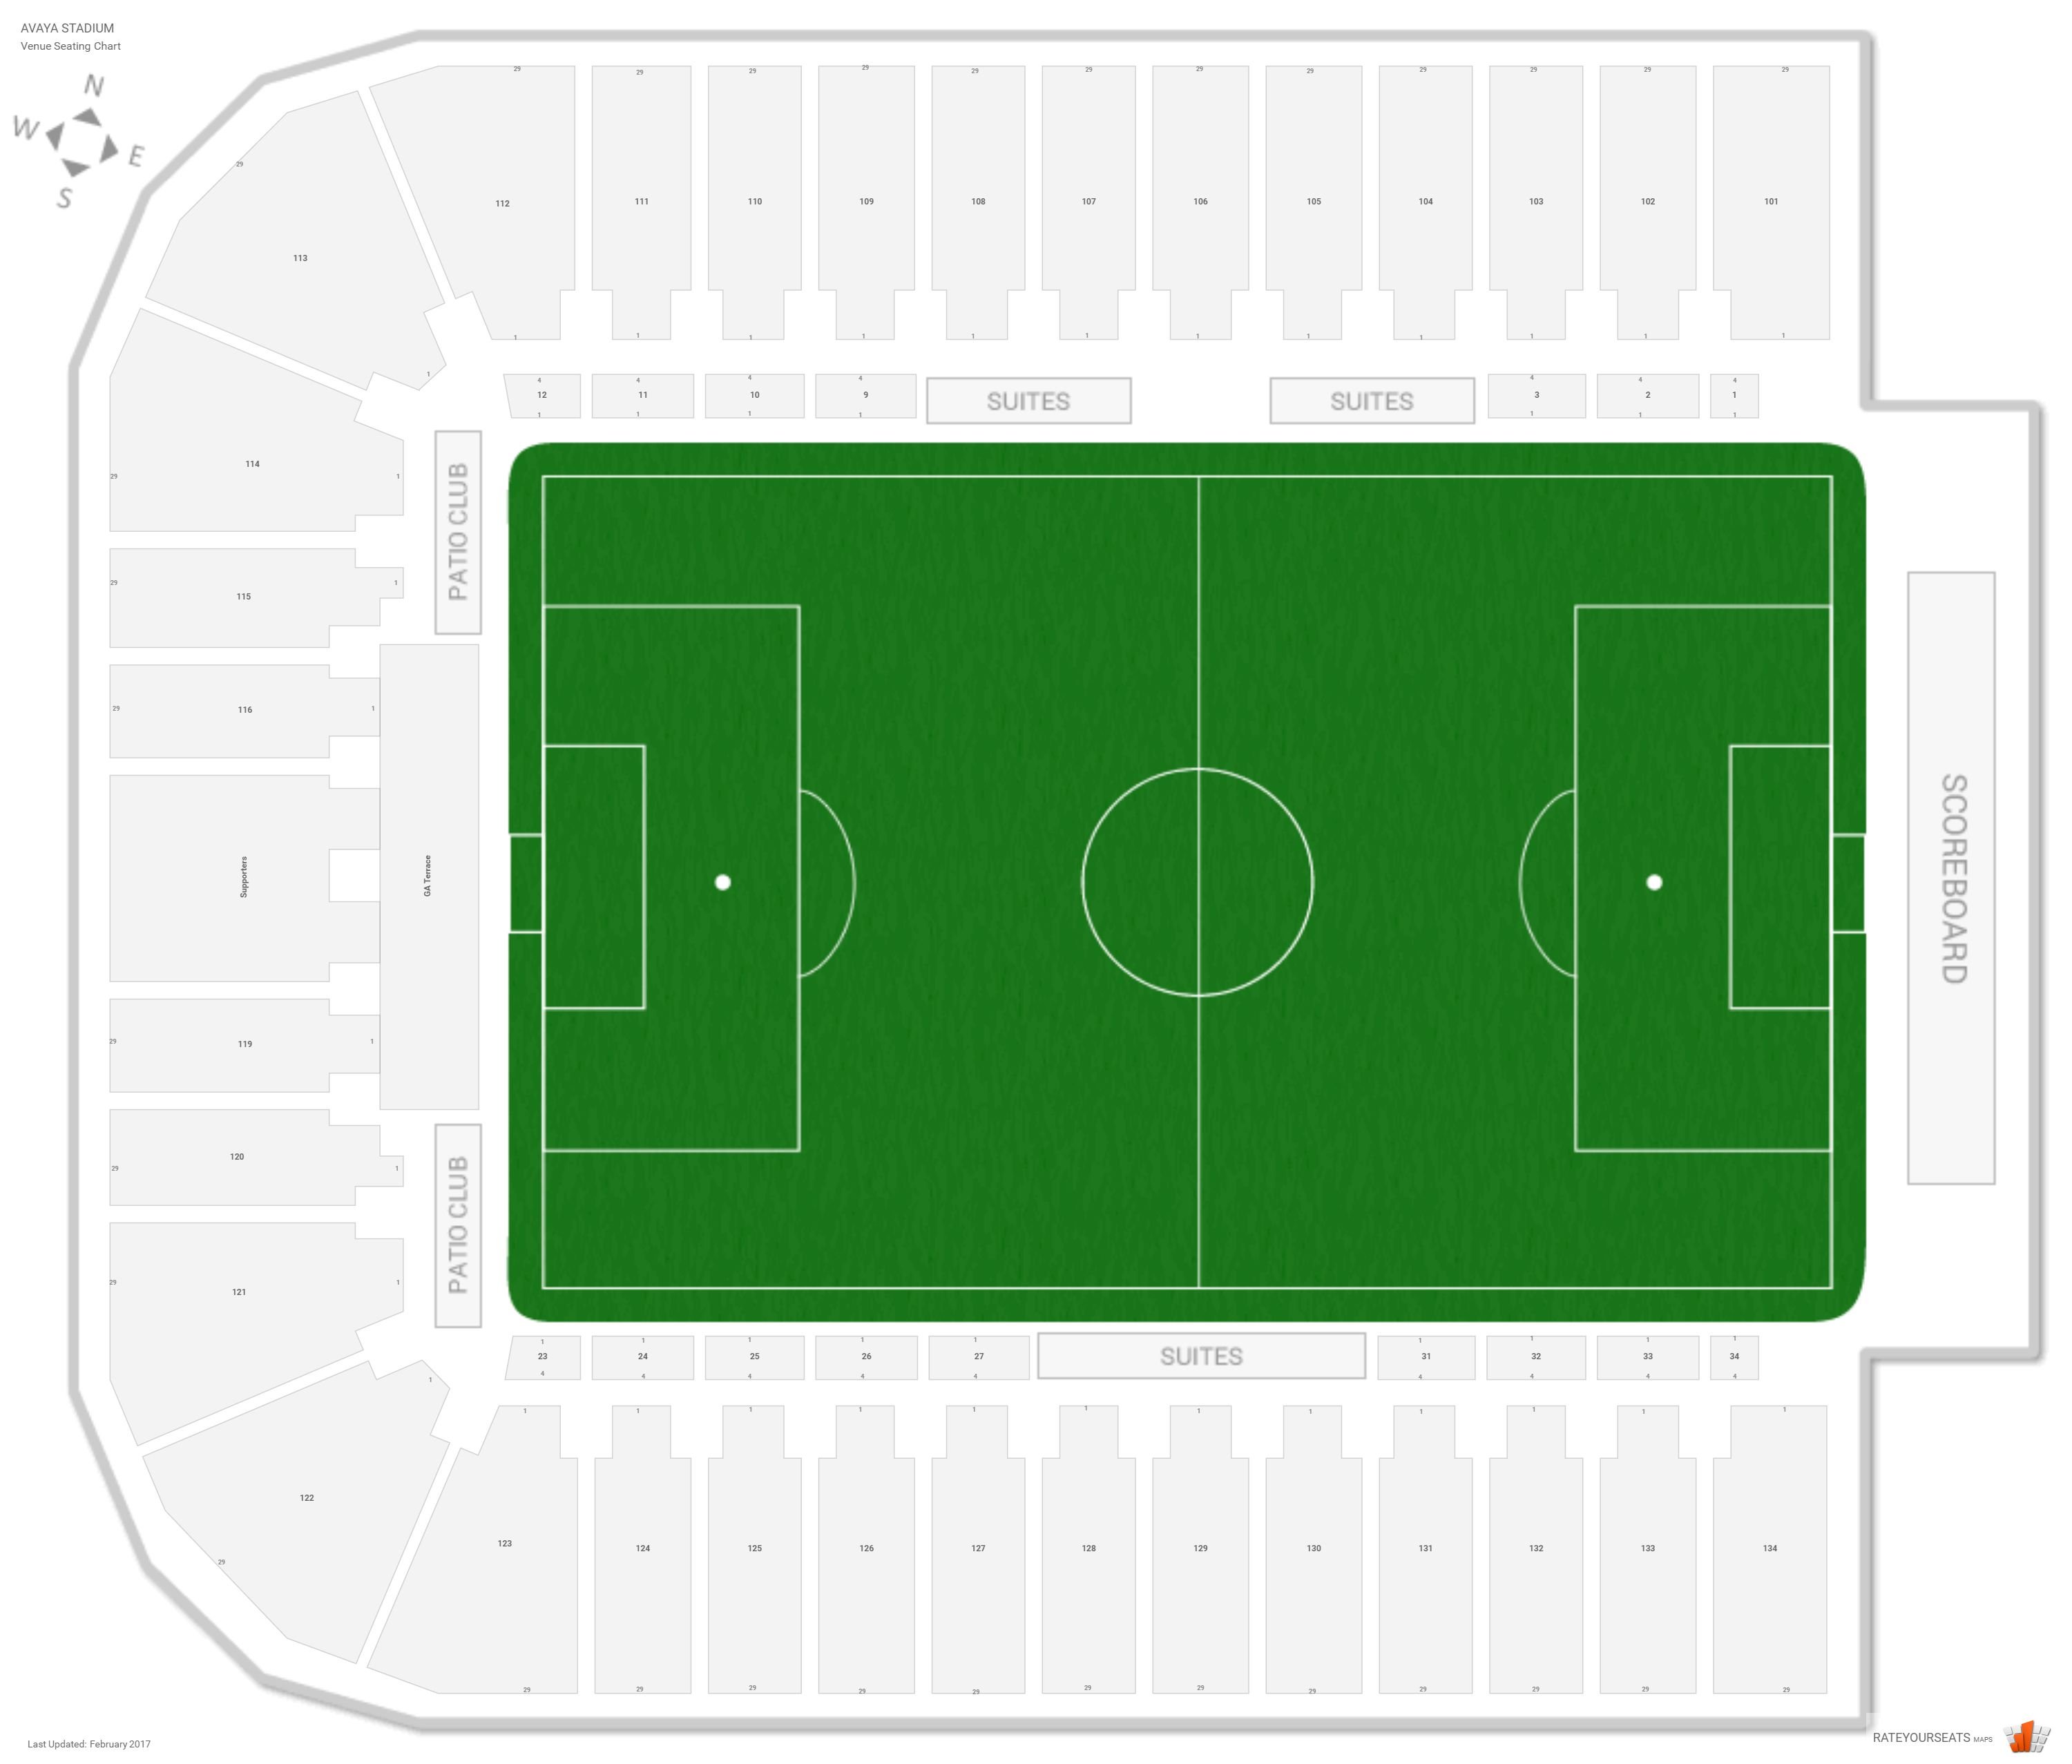 Aviva Stadium Seating Chart